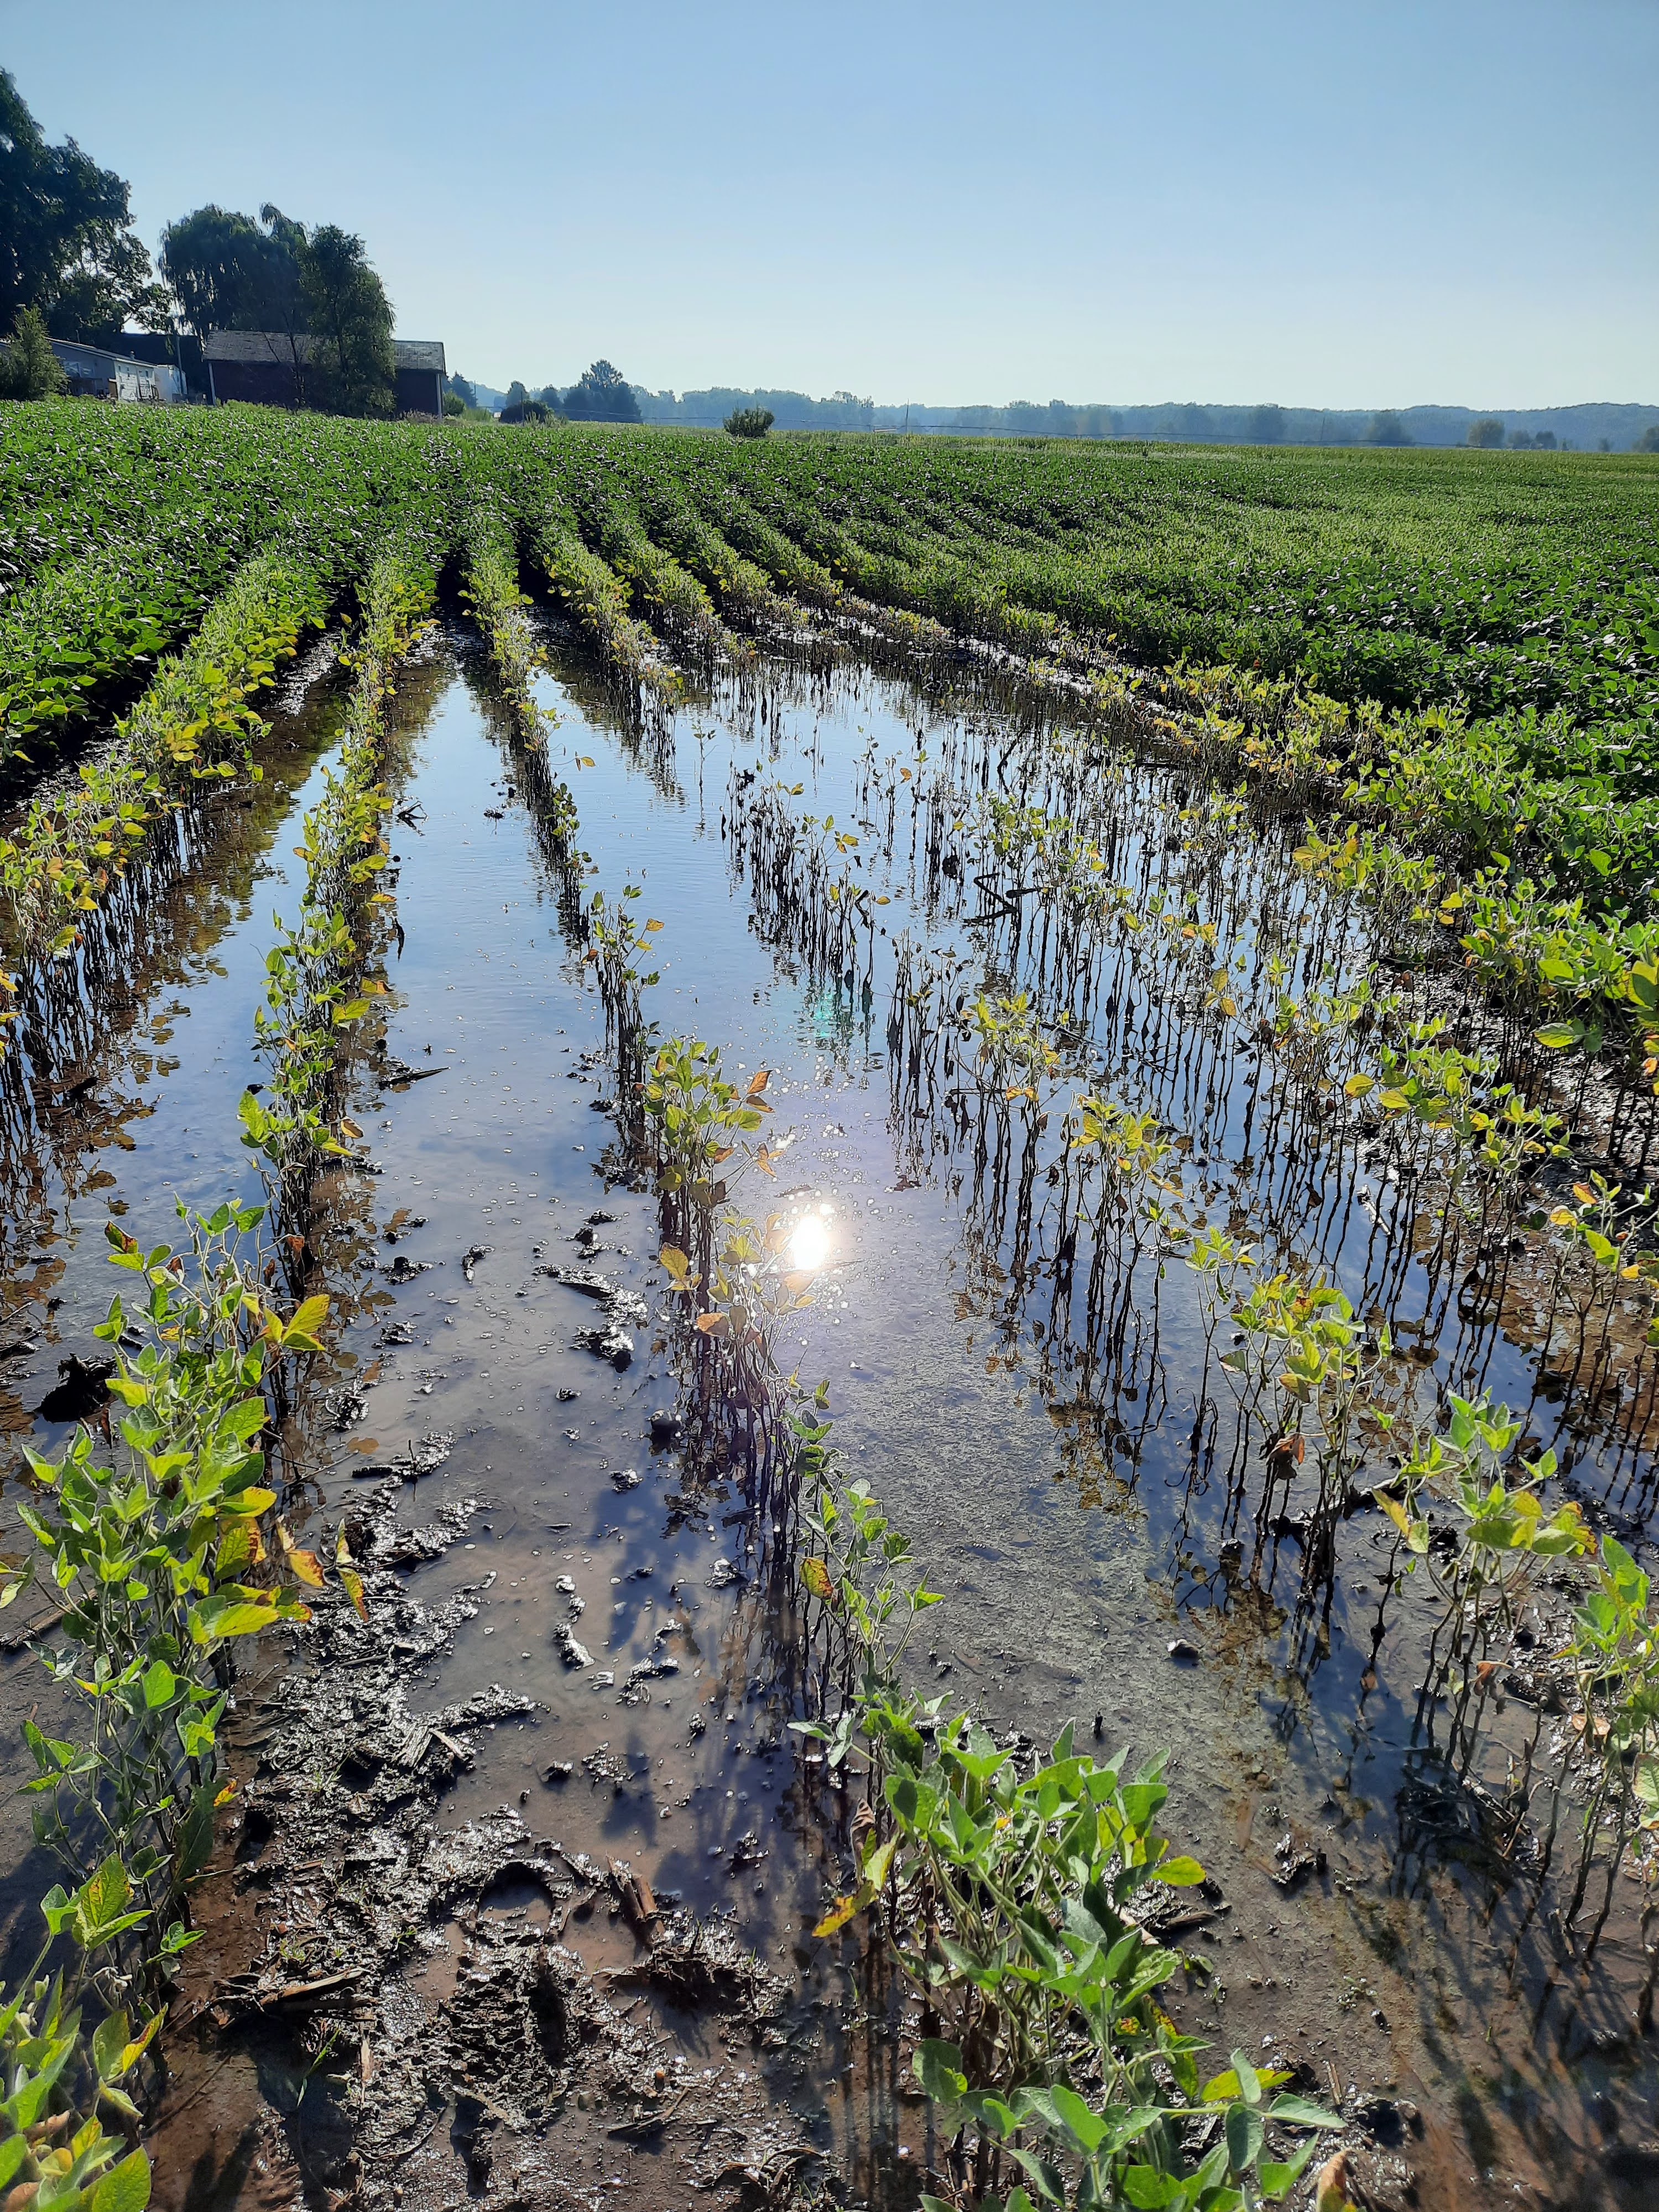 standing water in a soybean field